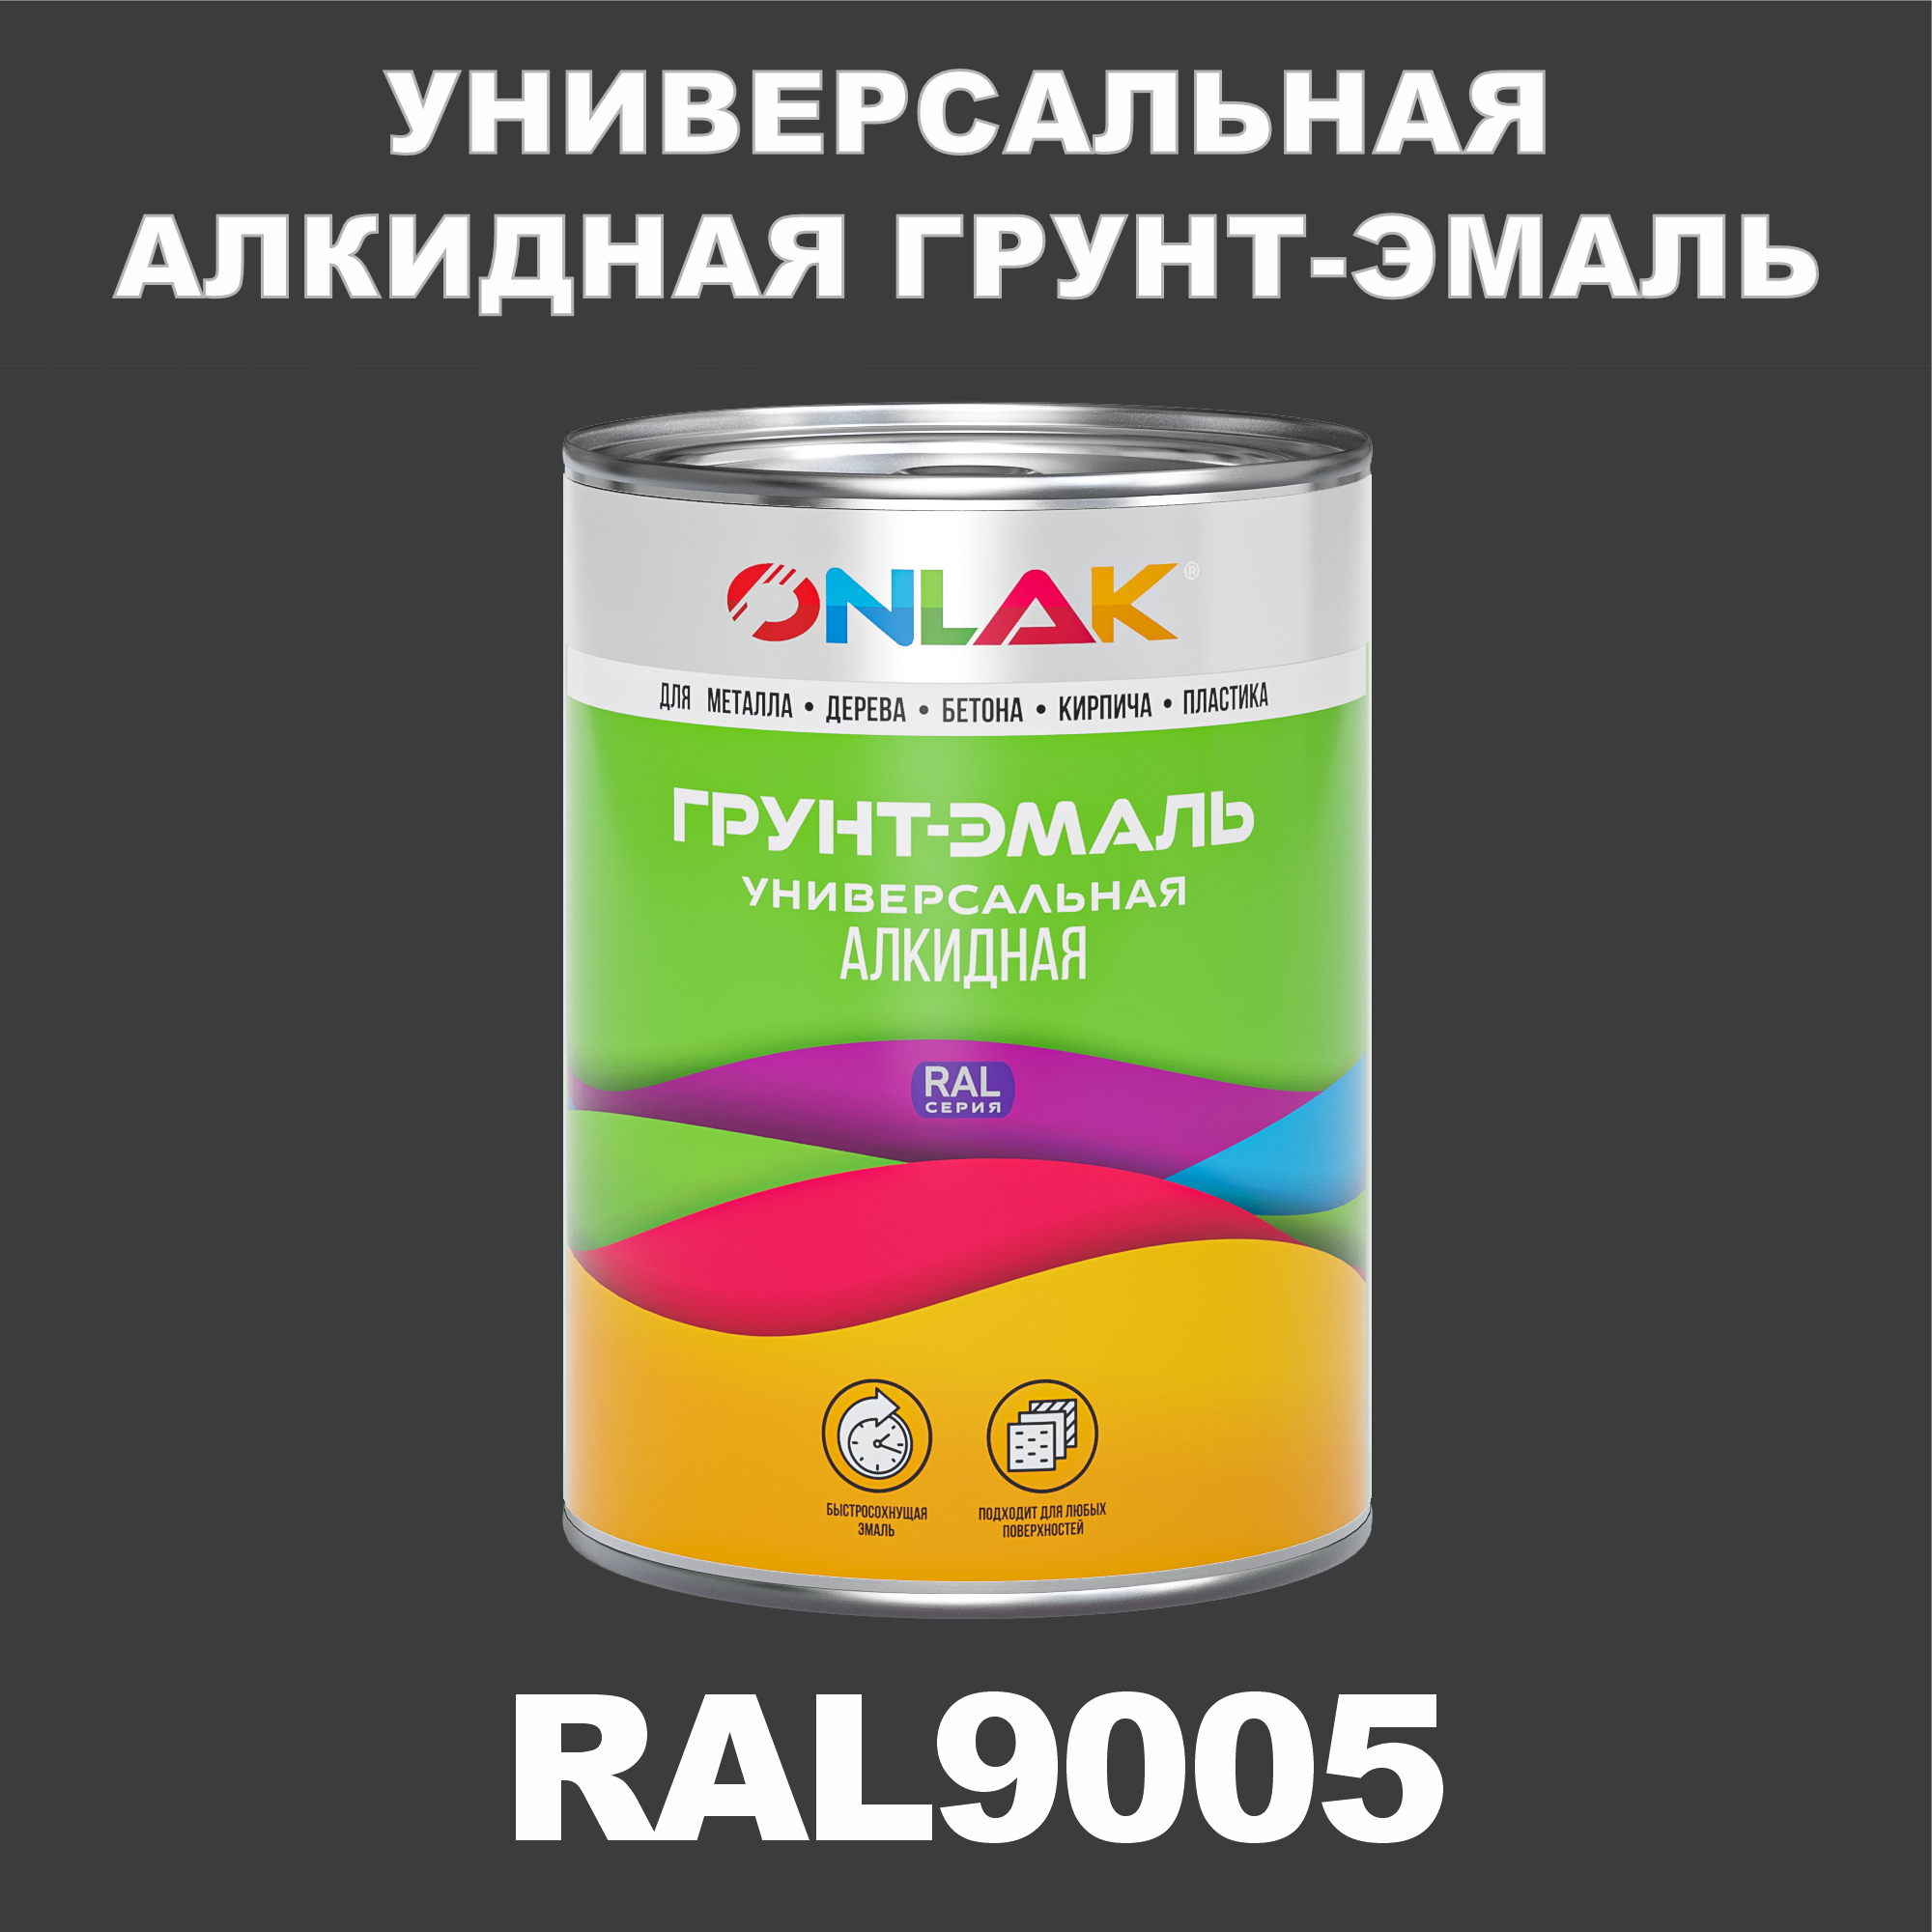 Грунт-эмаль ONLAK 1К RAL9005 антикоррозионная алкидная по металлу по ржавчине 1 кг грунт эмаль вит по ржавчине алкидная серая 1 8 кг